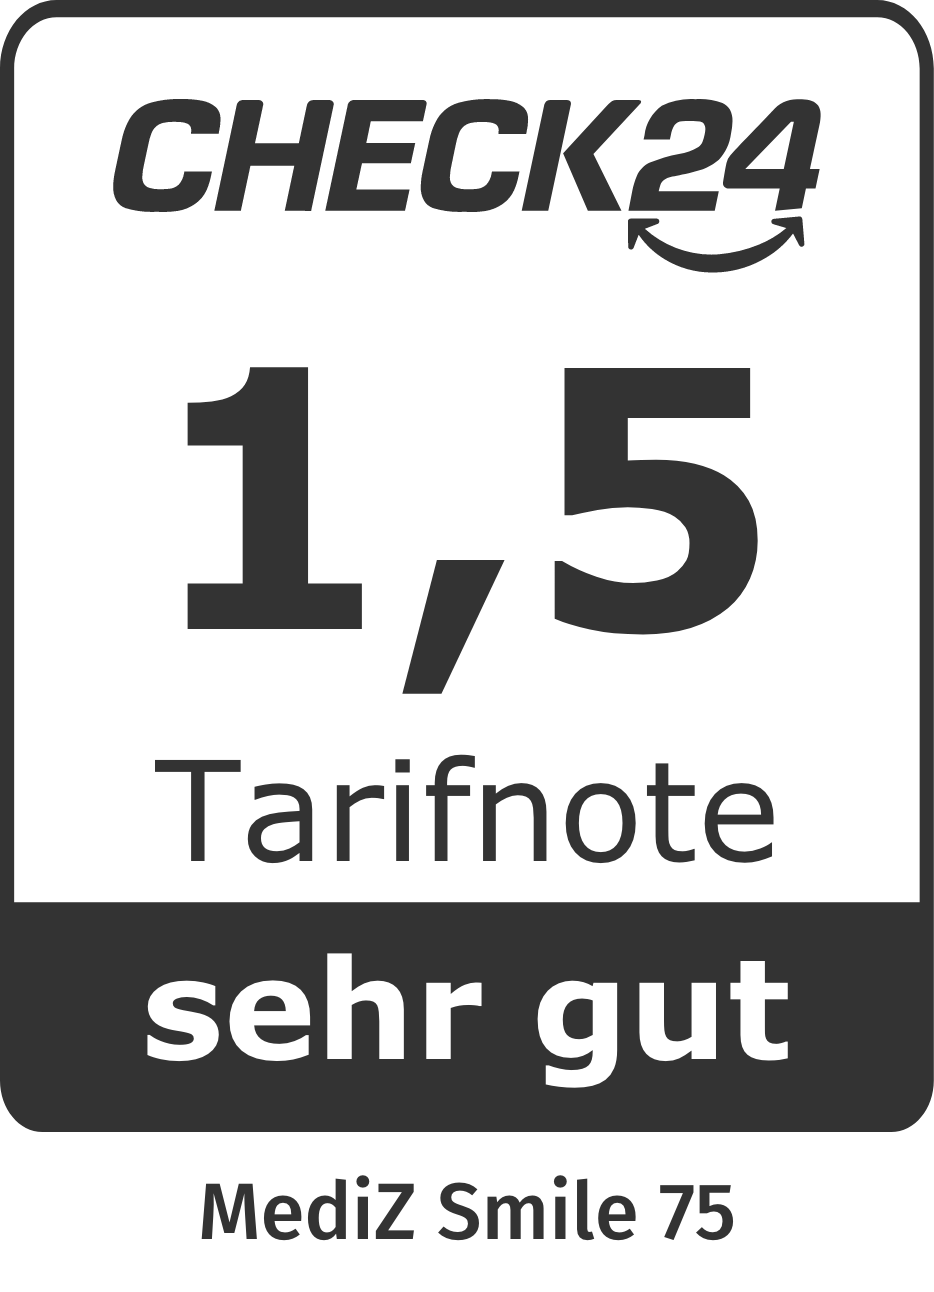 Check24 Tarifnote 1,5: Unser Gothaer MediZSmile hat bei Check24 die Tarifnote 1,5 erhalten.